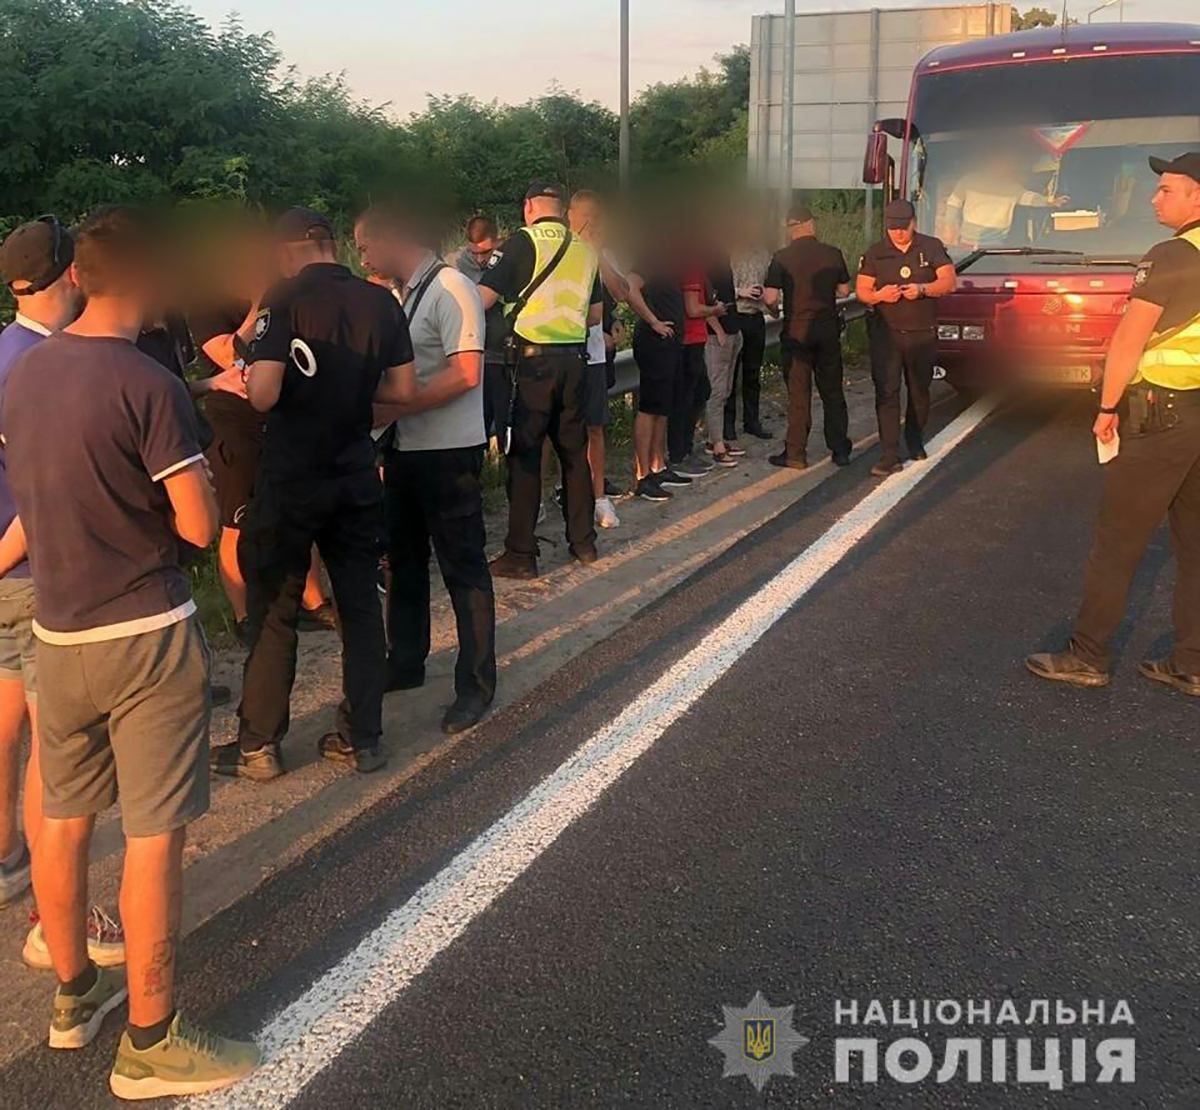 Массово едут в Киев: полиция остановила автобусы с подозрительными молодыми людьми